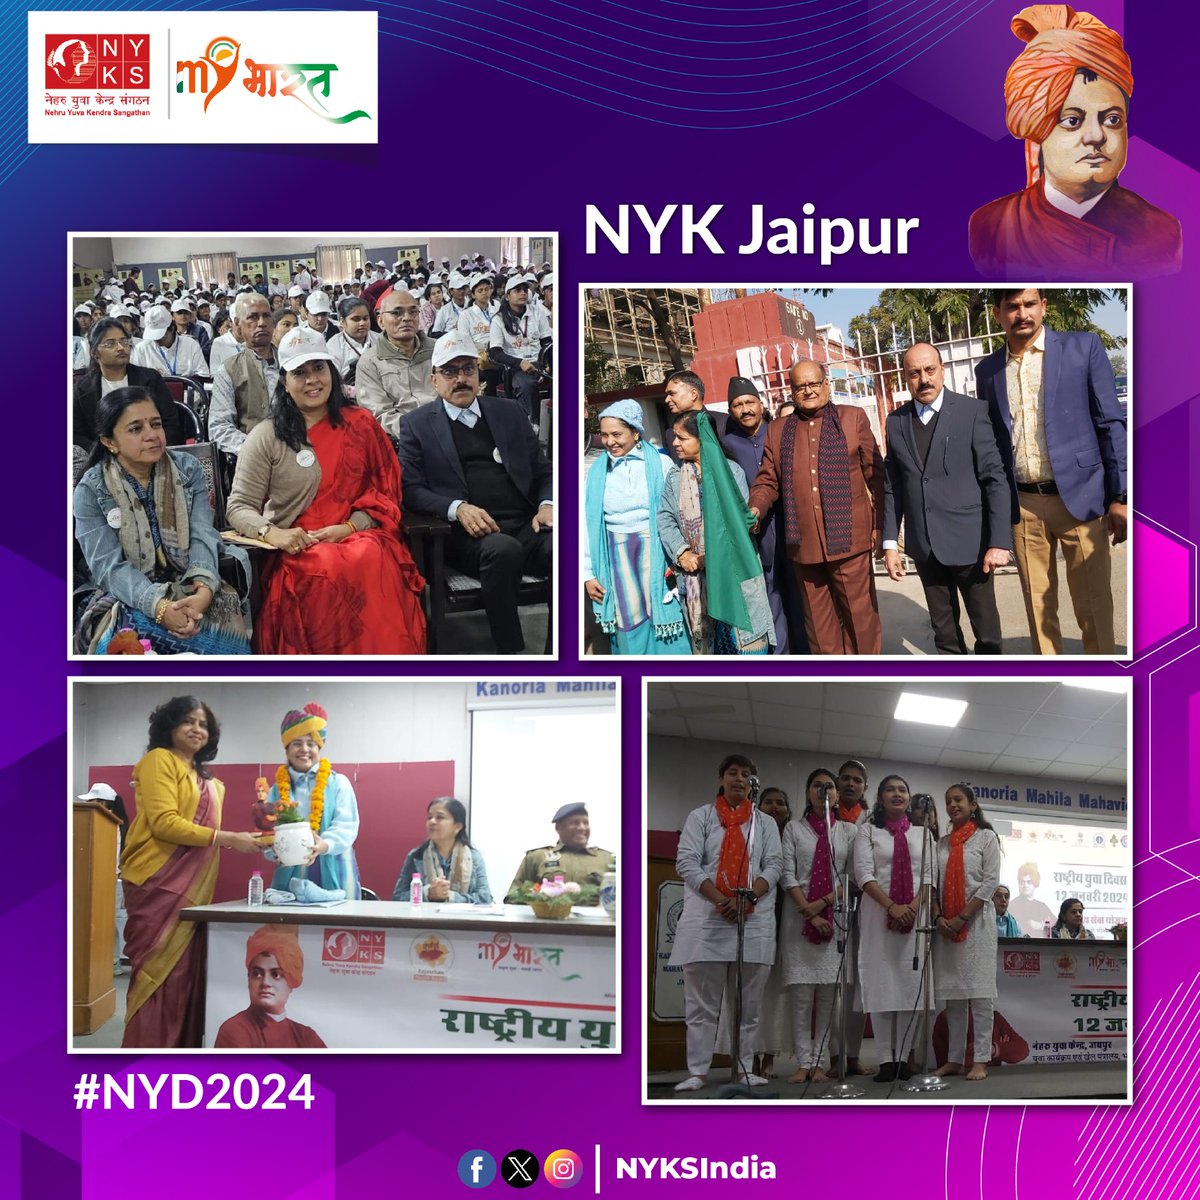 नेहरू युवा केंद्र जयपुर द्वारा #राष्ट्रीय_युवा_दिवस के अवसर पर विशेष कार्यक्रम आयोजित किया गया, जिसमें मुख्य अतिथि श्री कालीचरण श्रॉफ, माननीय विधायक, श्रीमती सौम्या गुर्जर,मेयर, नगर निगम, जयपुर आदि उपस्थित हुए। #NYD2024 #NationalYouthDay #Jaipur